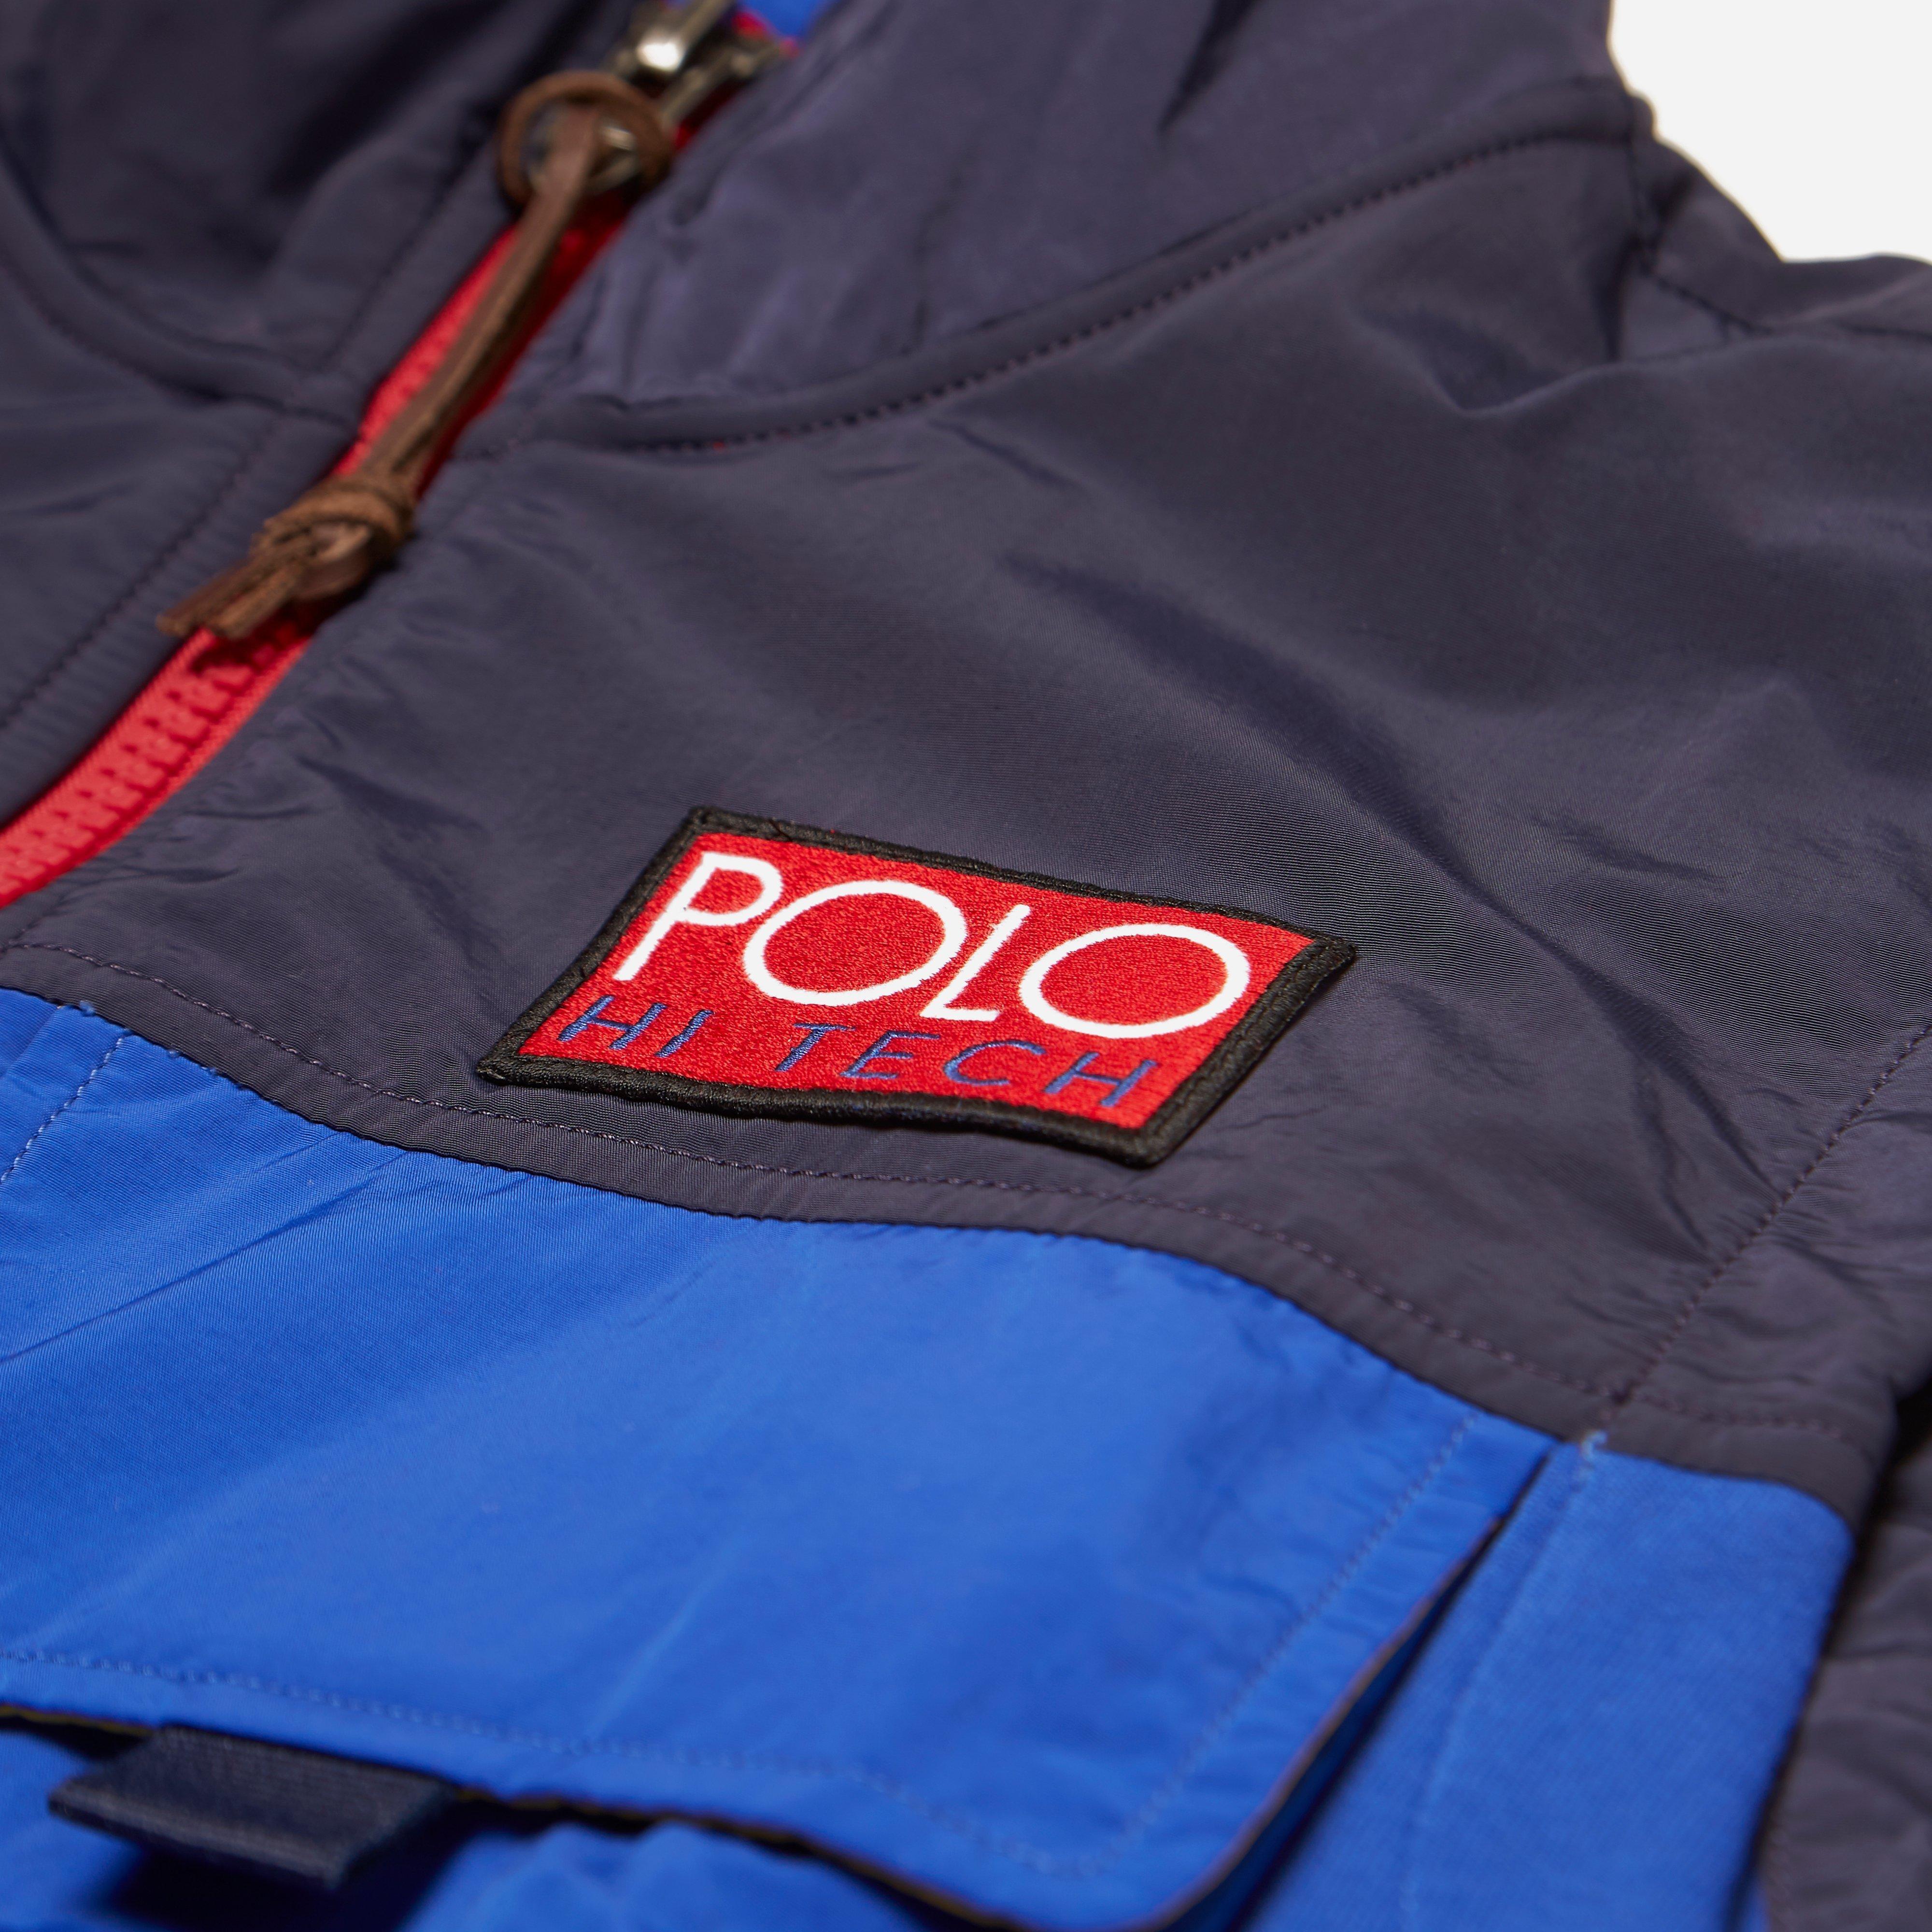 Polo Ralph Lauren Hi Tech Hybrid Vest in Navy (Blue) for Men - Lyst